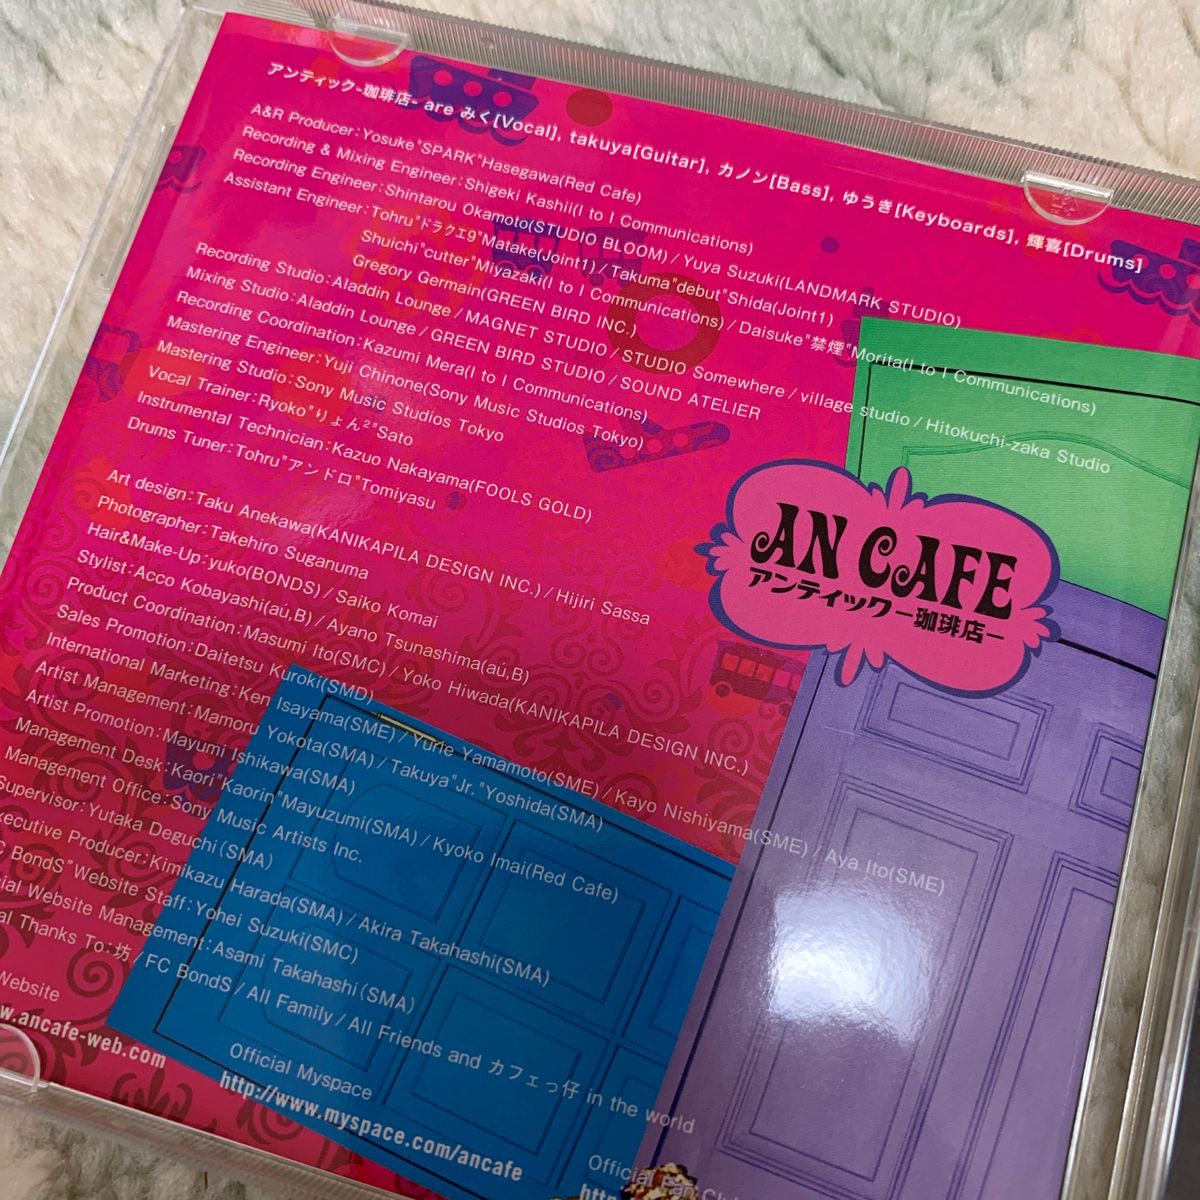 BBパラレルワールド　AN CAFE アンティック-珈琲店- CD